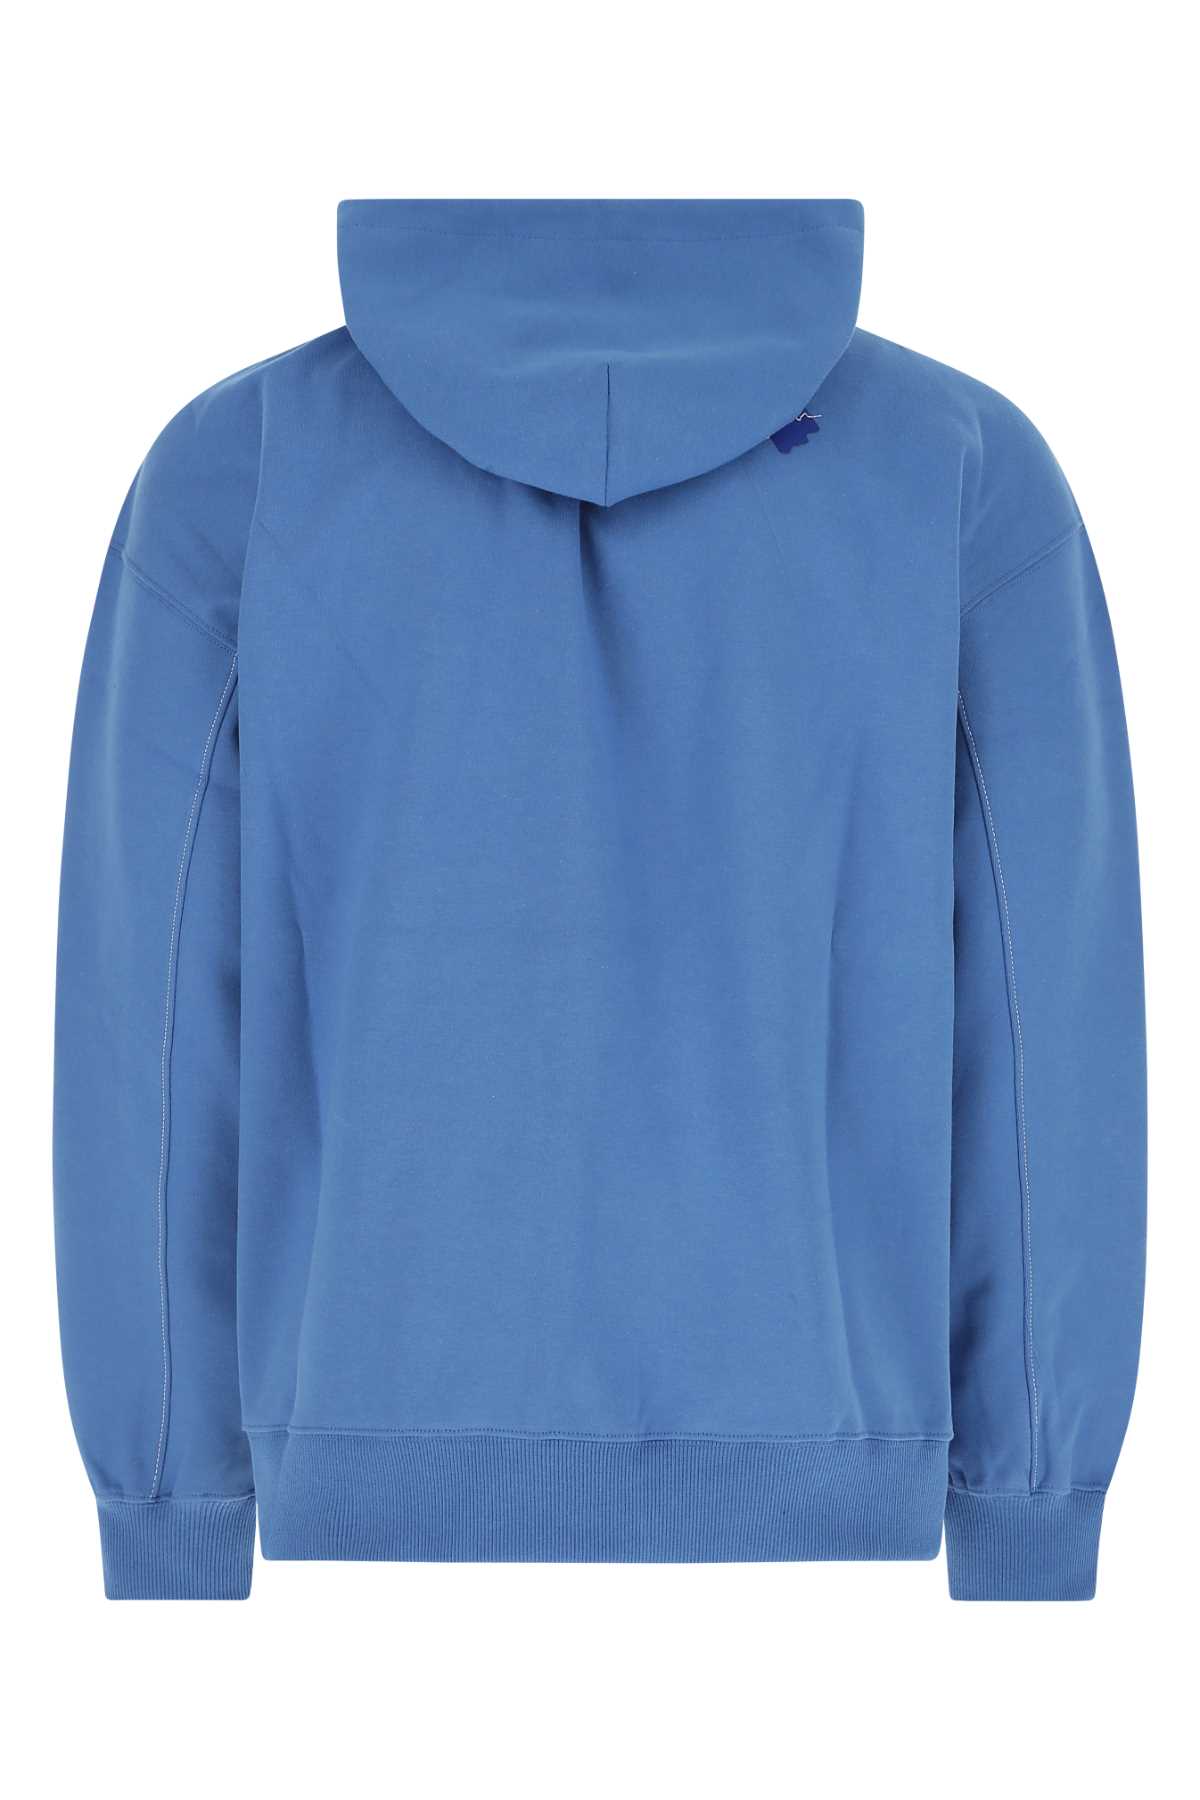 Shop Ader Error Cerulean Blue Cotton Blend Sweatshirt